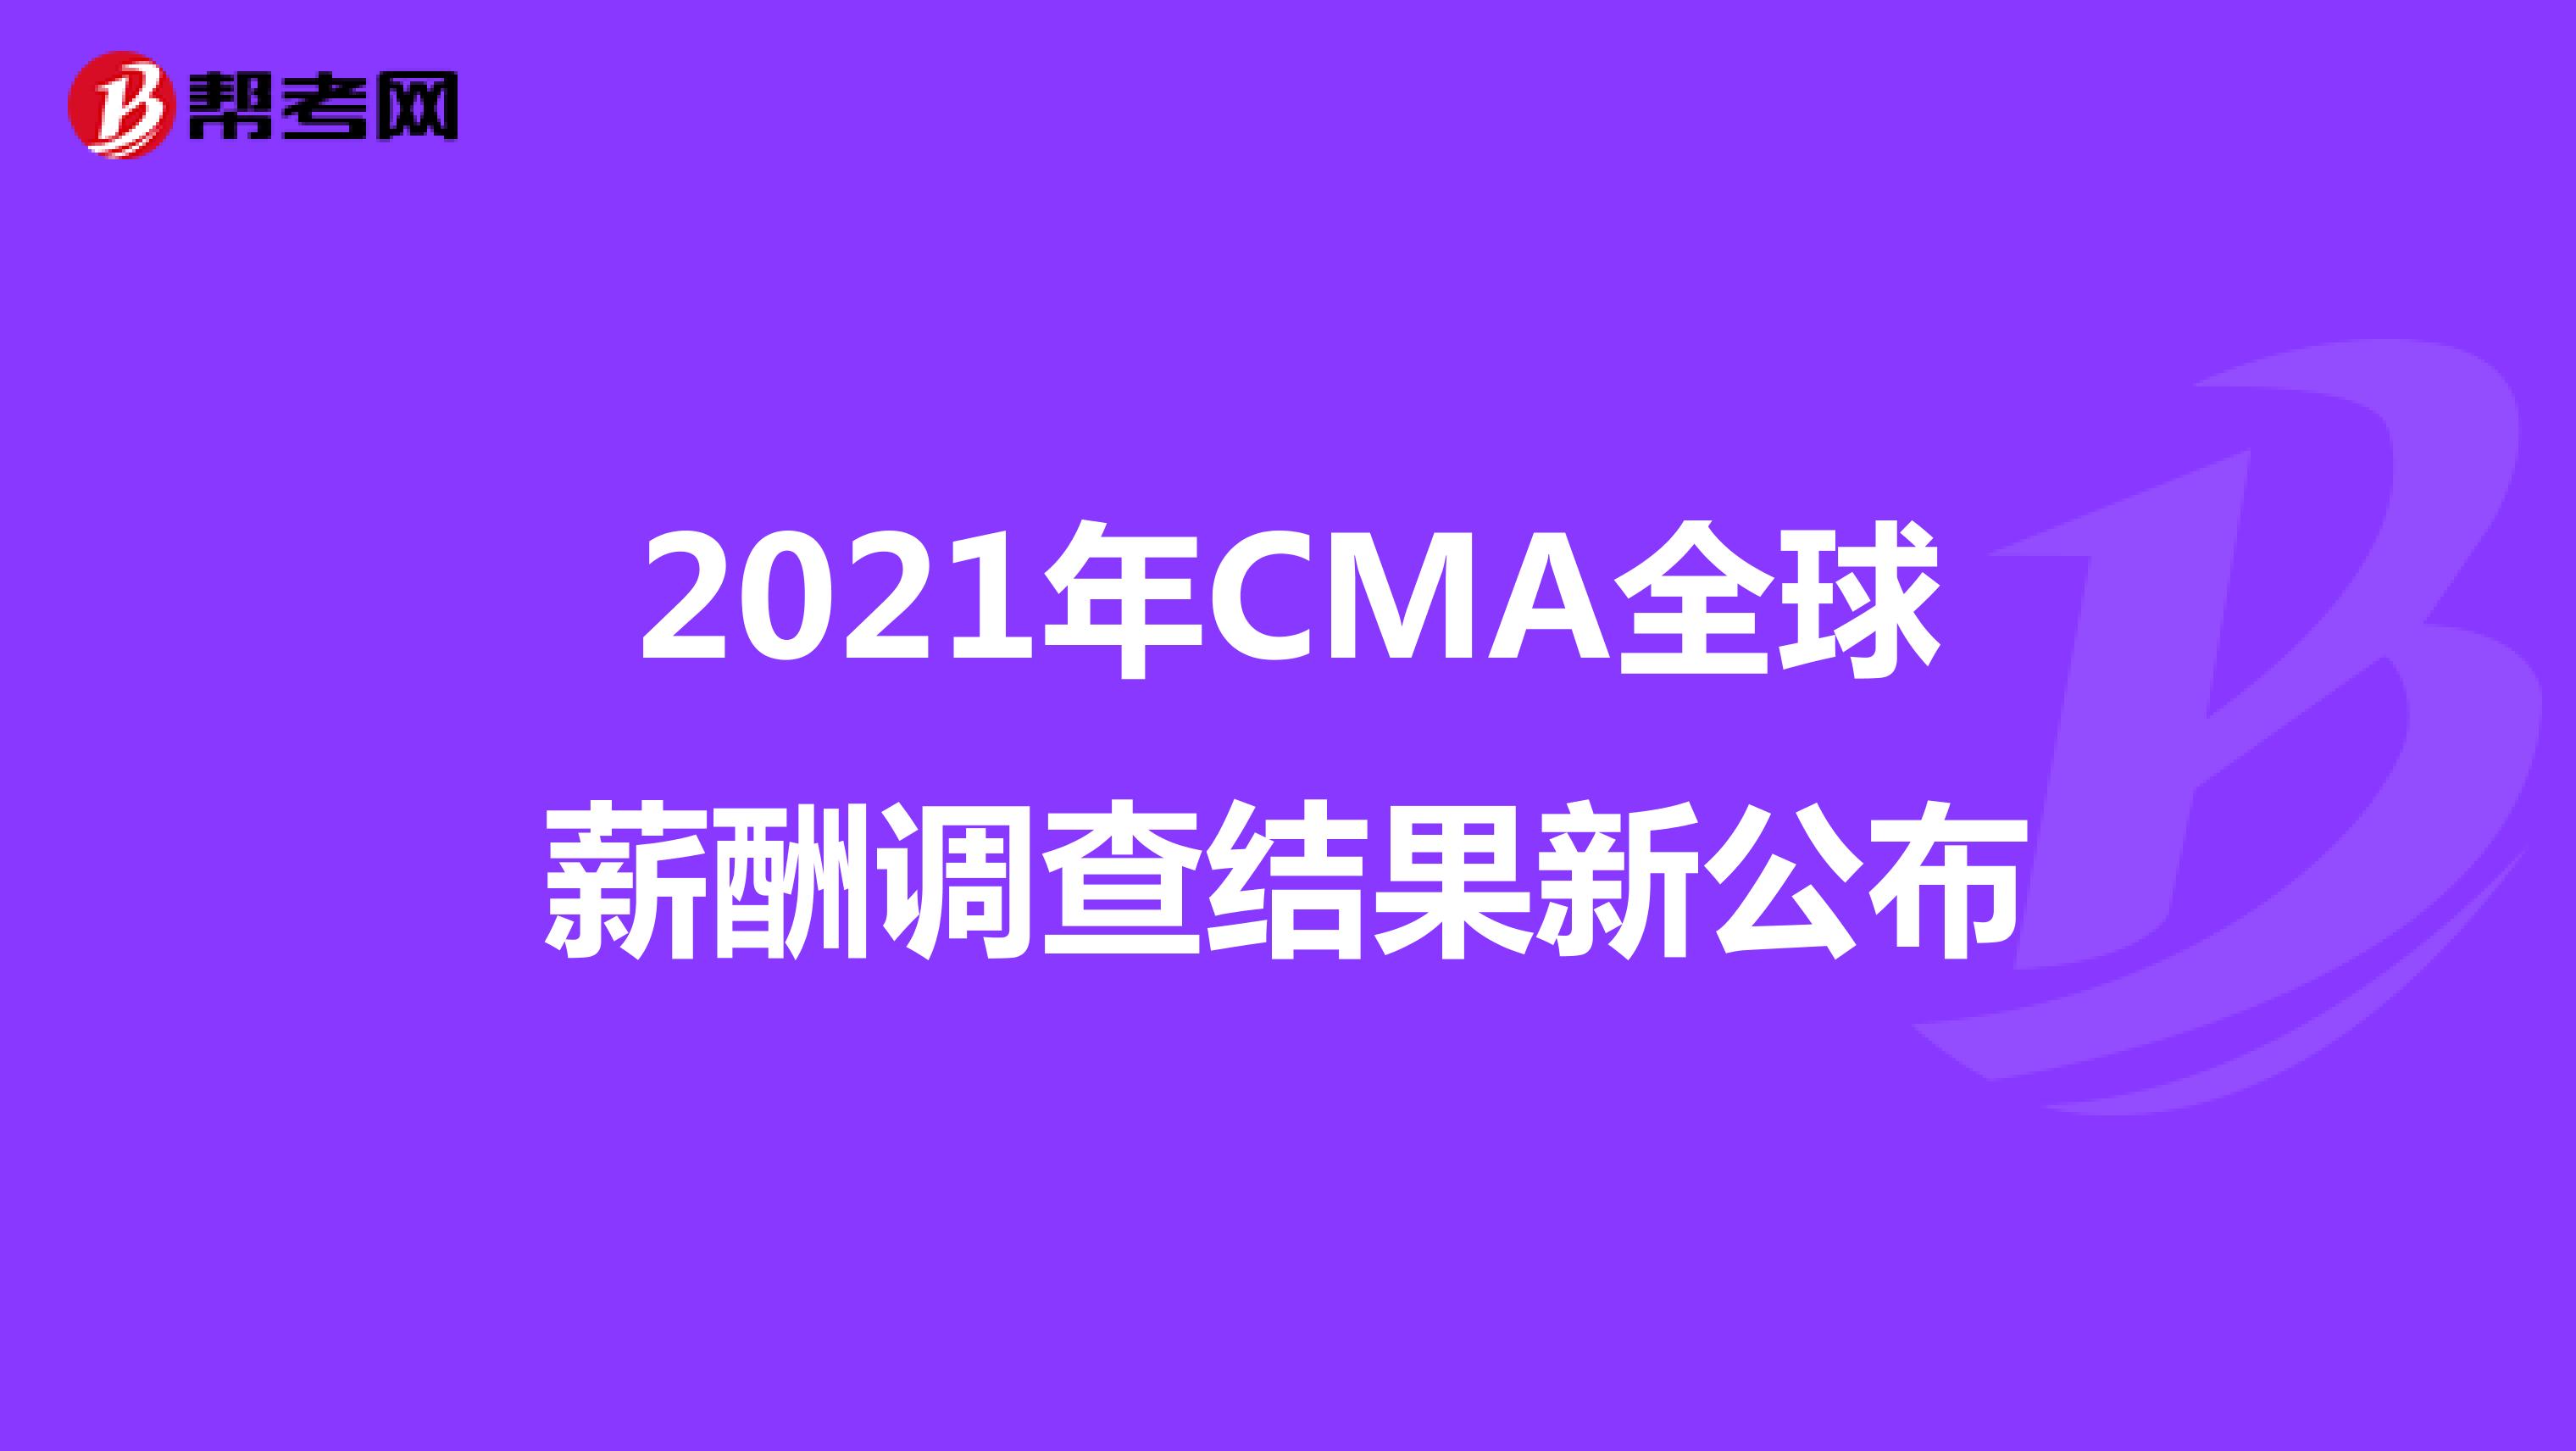 2021年CMA全球薪酬调查结果新公布